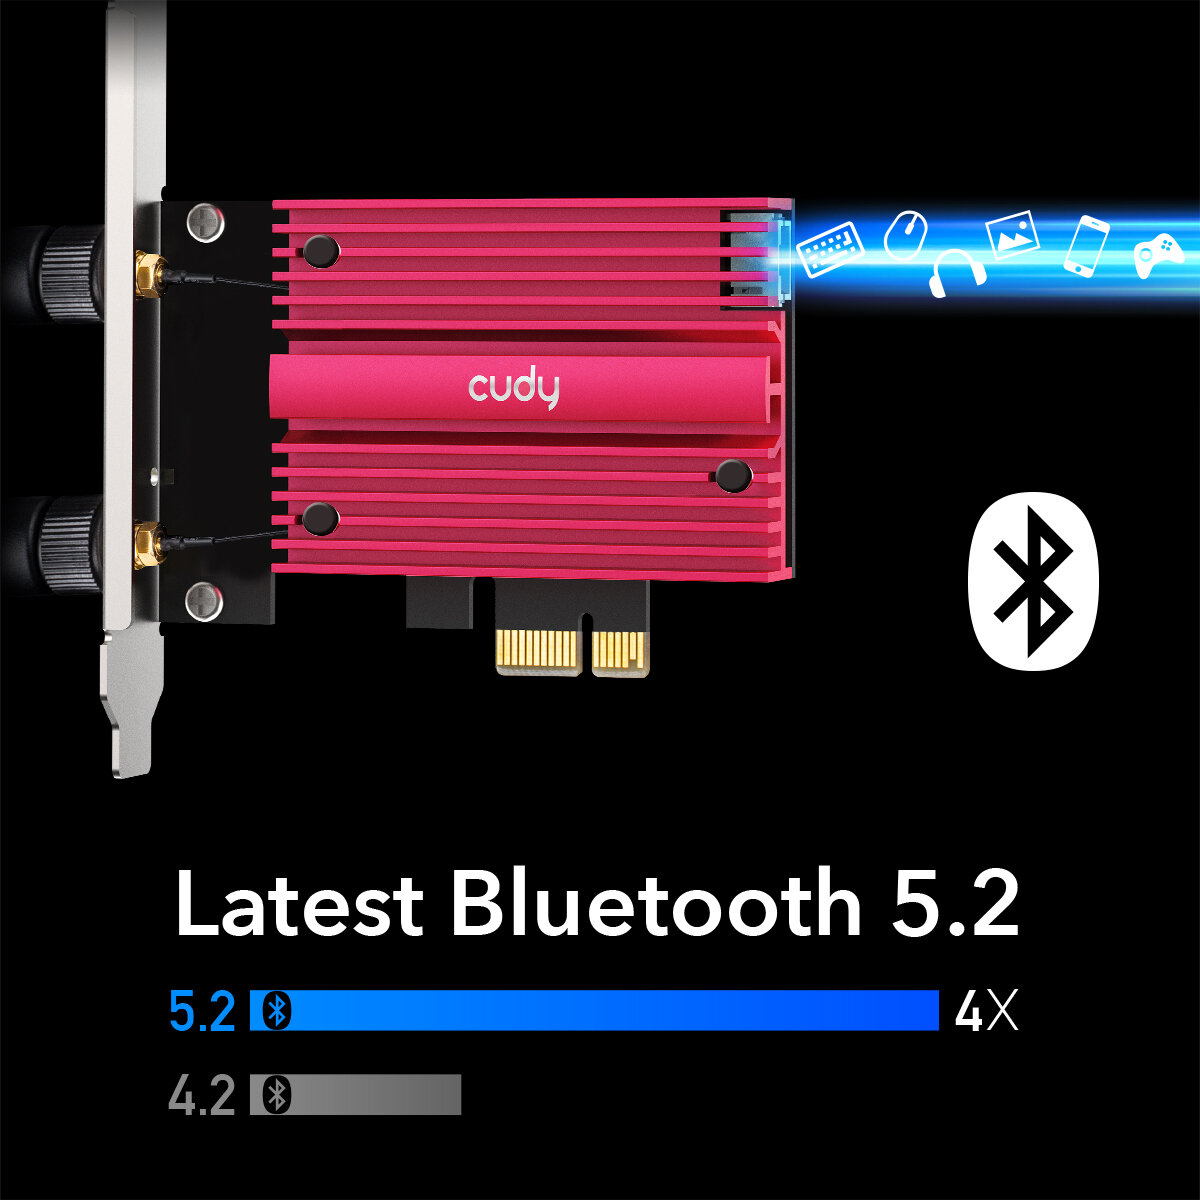 Karta sieciowa Cudy WE3000S PCI-E widok karty z boku i porównanie stadardów Bluetooth 5.2 z Bluetooth 4.2